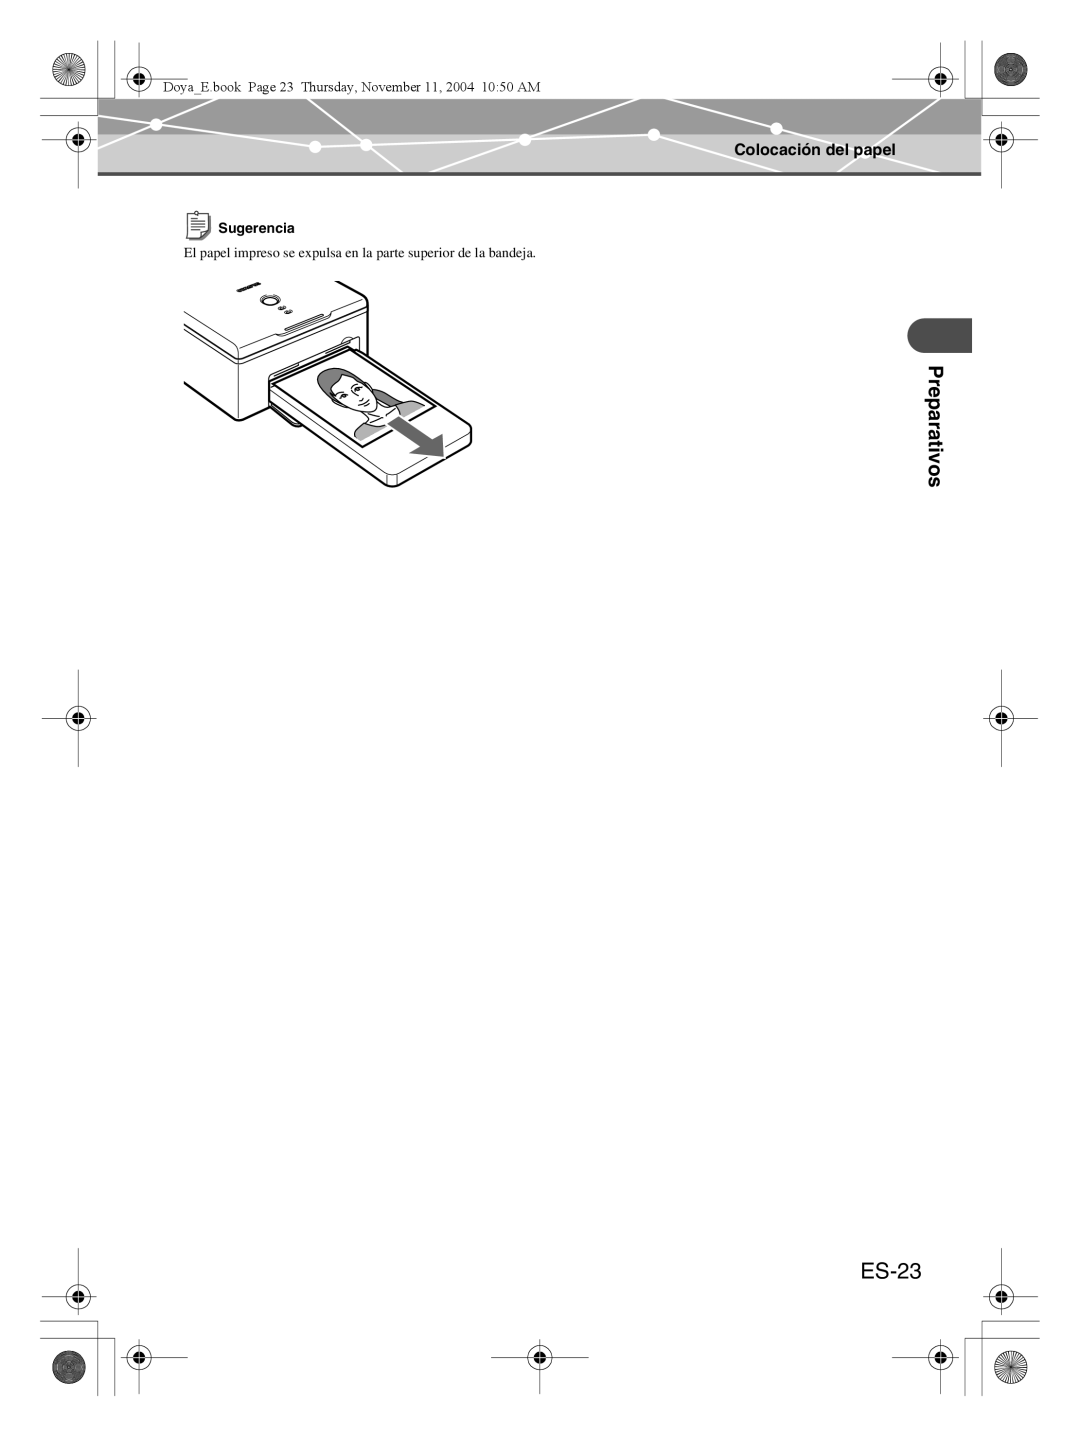 Olympus P-S100 user manual ES-23, Preparativos, Colocación del papel, Sugerencia 